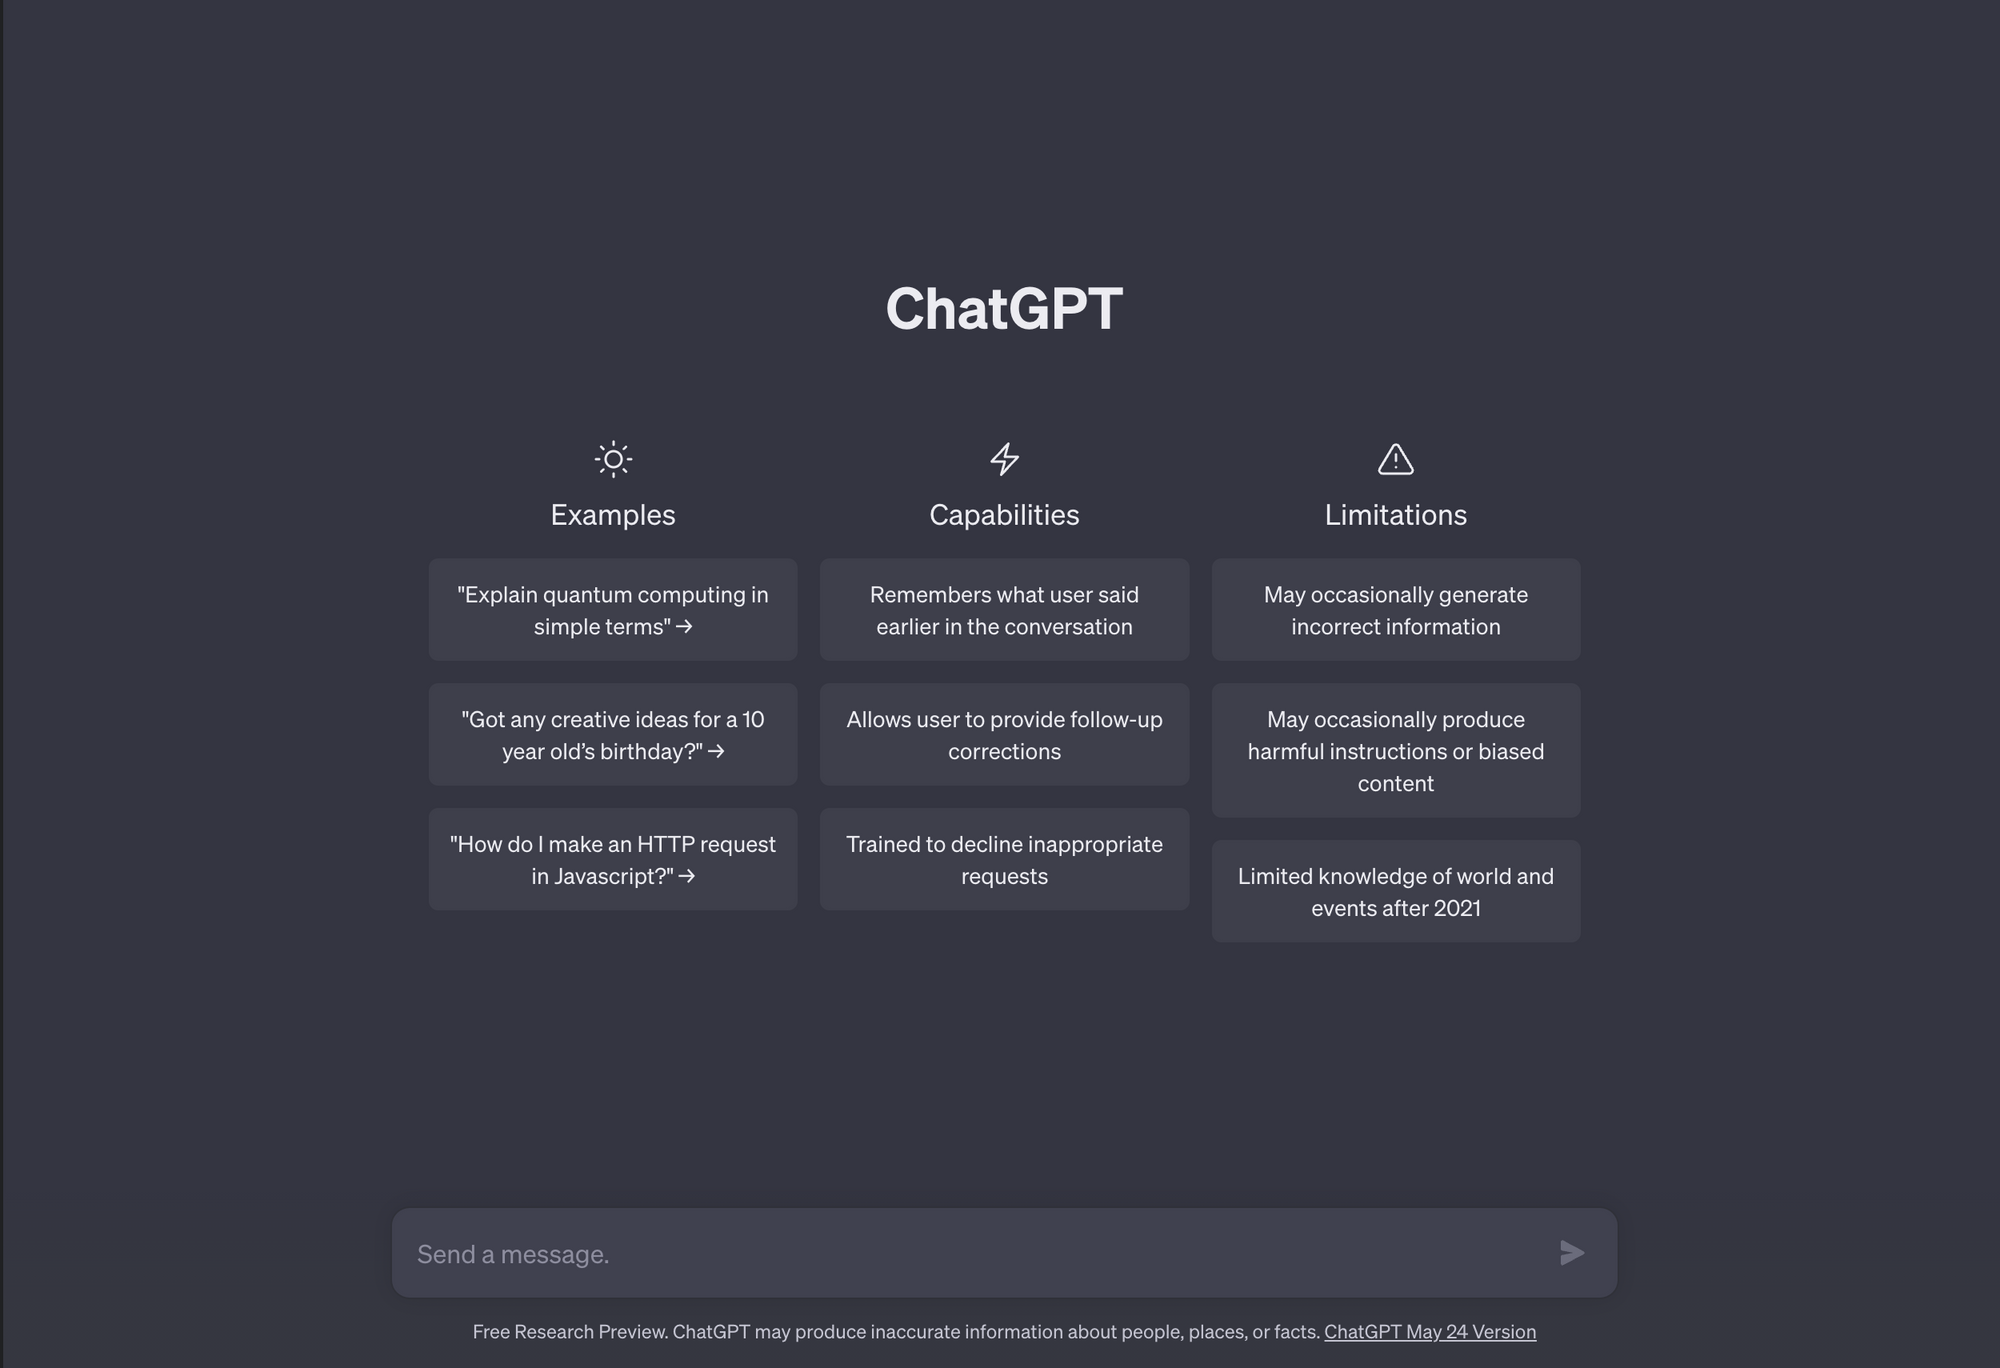 Image of ChatGPT website